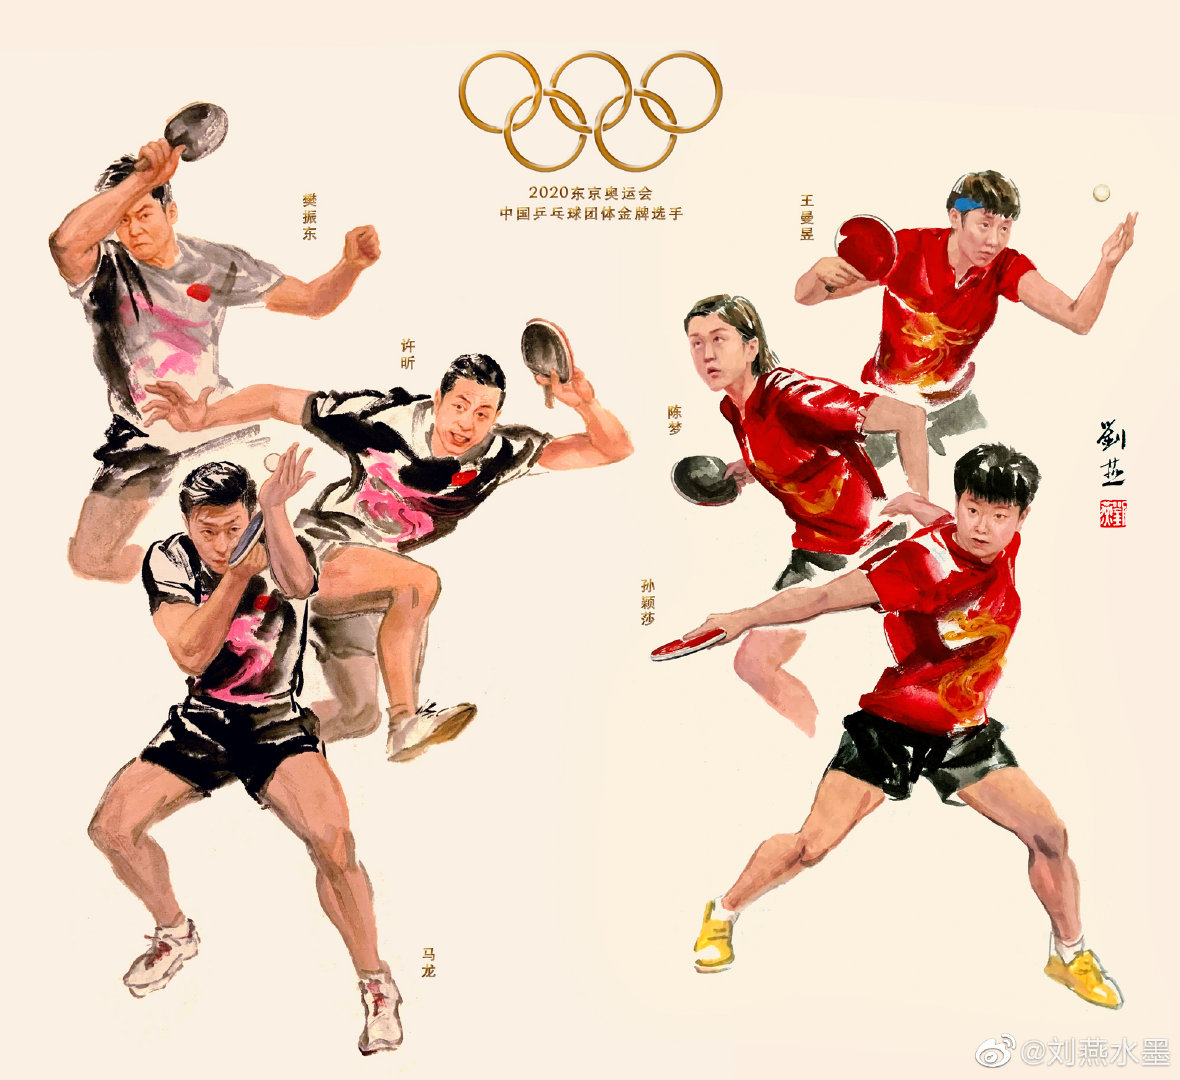 奥运人物画体育国风插画手绘系列写实组图创作时间2021/08/09素材16画